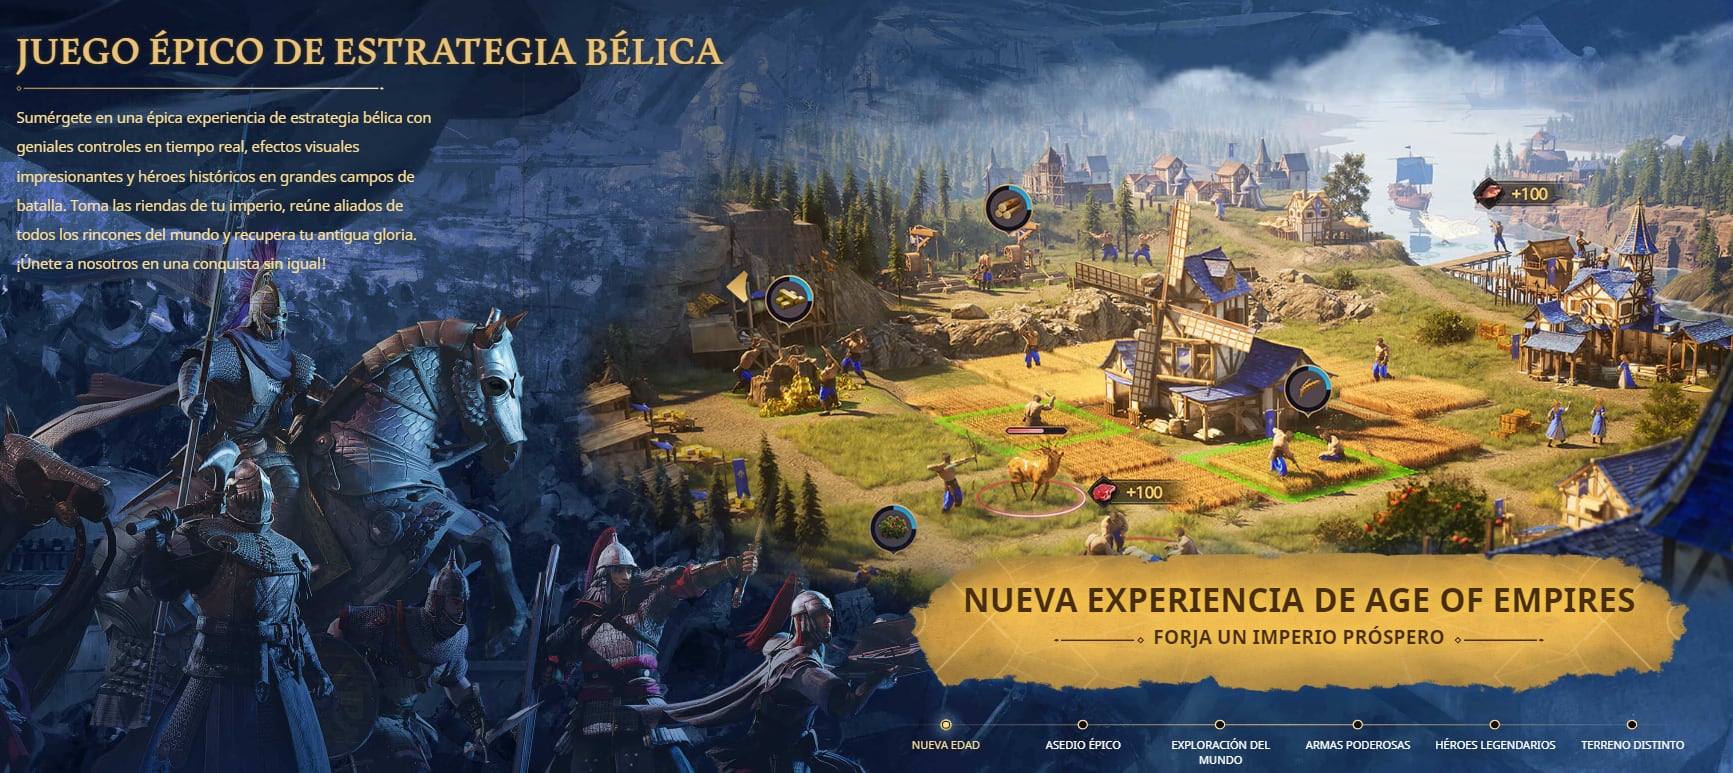 La versión móvil del juego de estrategias promete una nueva experiencia pero con la misma esencia que caracteriza a toda la saga. (Foto: Tomado del sitio oficial de Age of Empires)